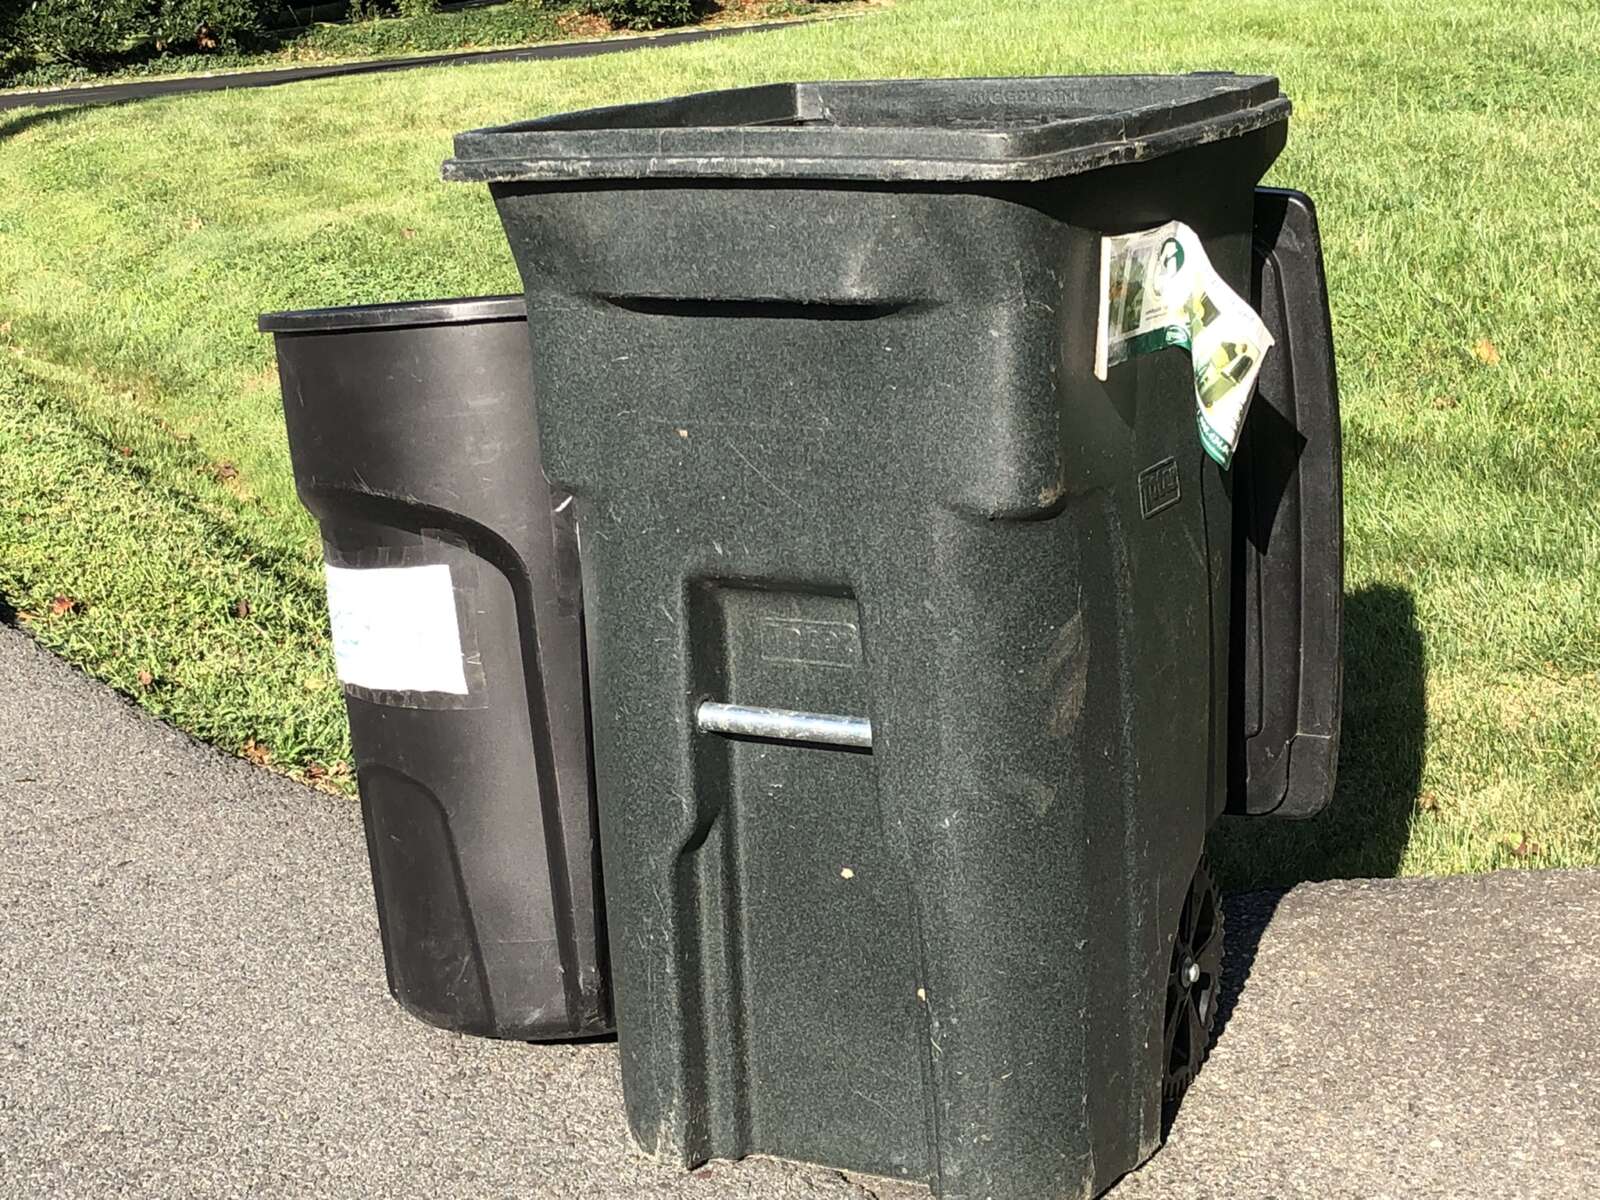 Trash Cans at